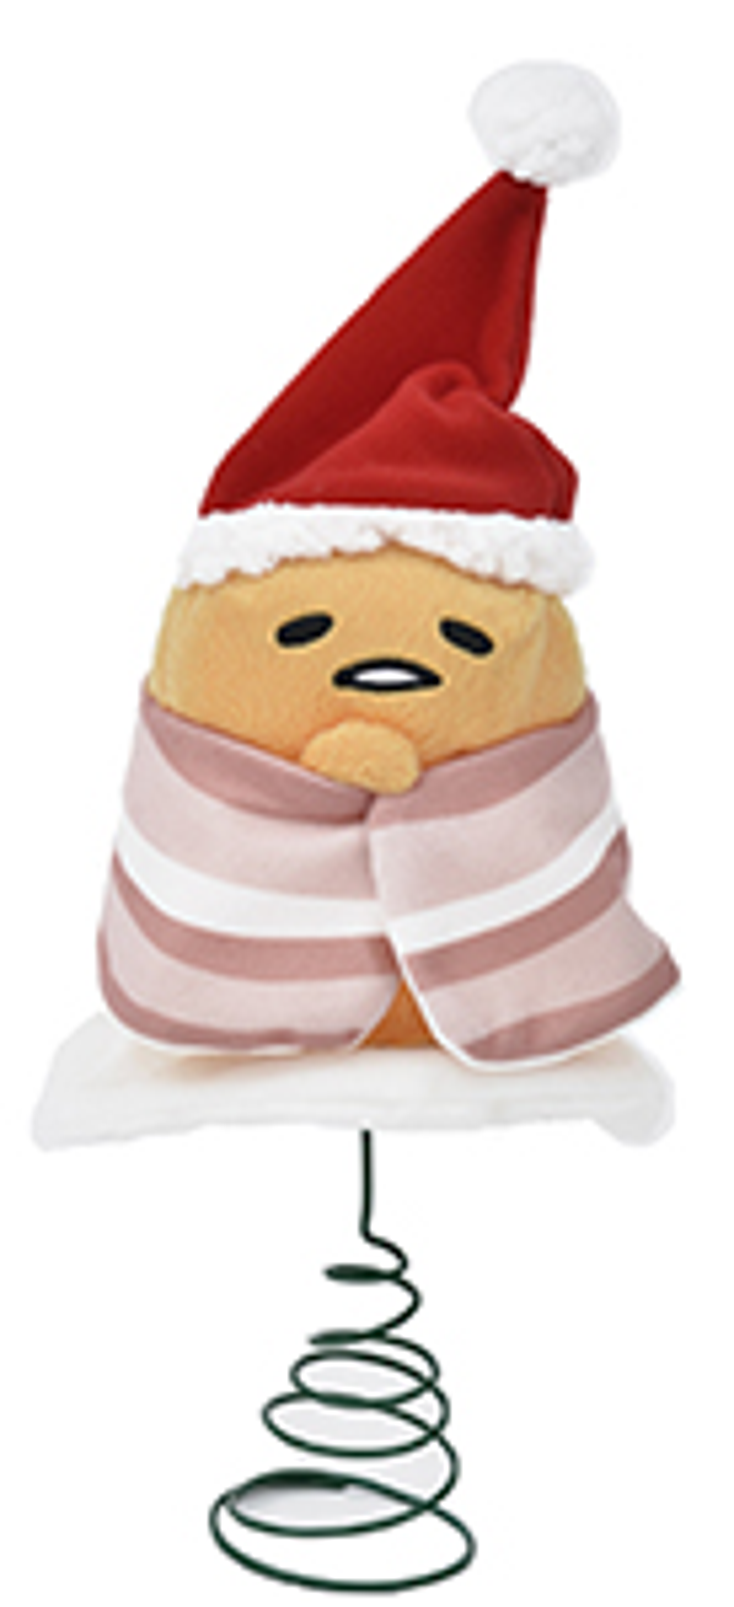 Sanrio to Open Gudetama Holiday Shop in L.A.